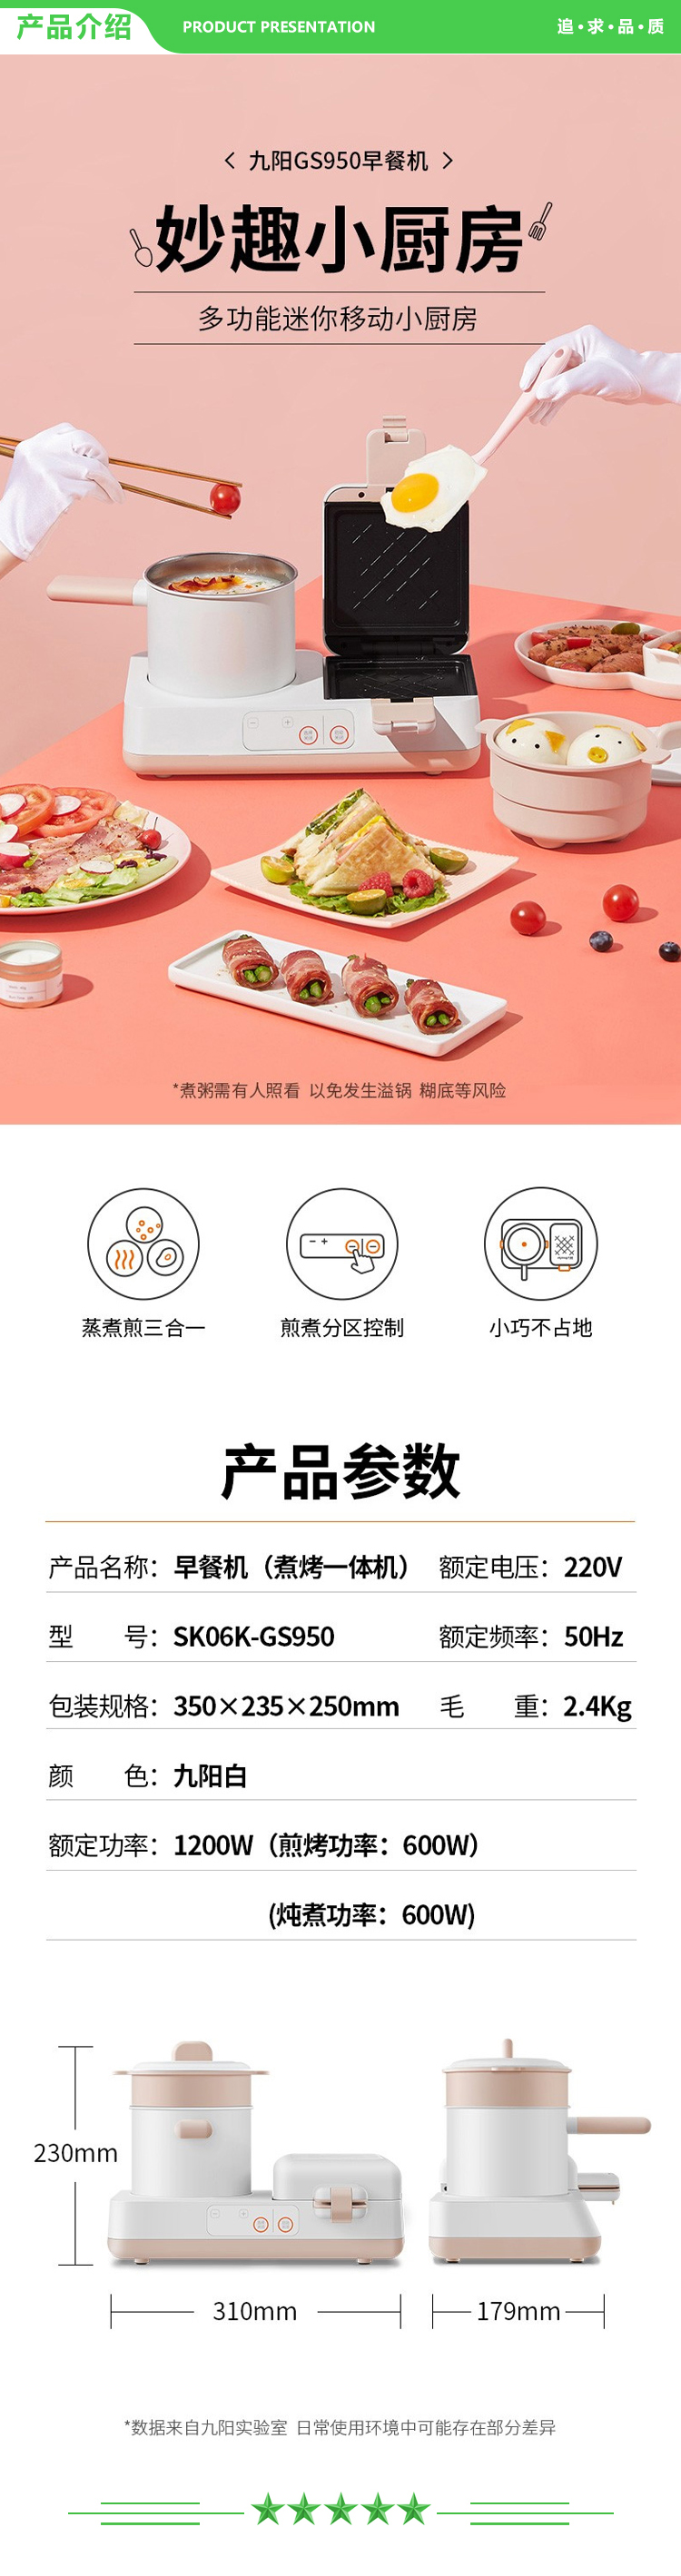 九阳 Joyoung SK06K-GS950 电饼铛 双面加热可拆洗三明治机 多功能早餐机 白+粉.jpg